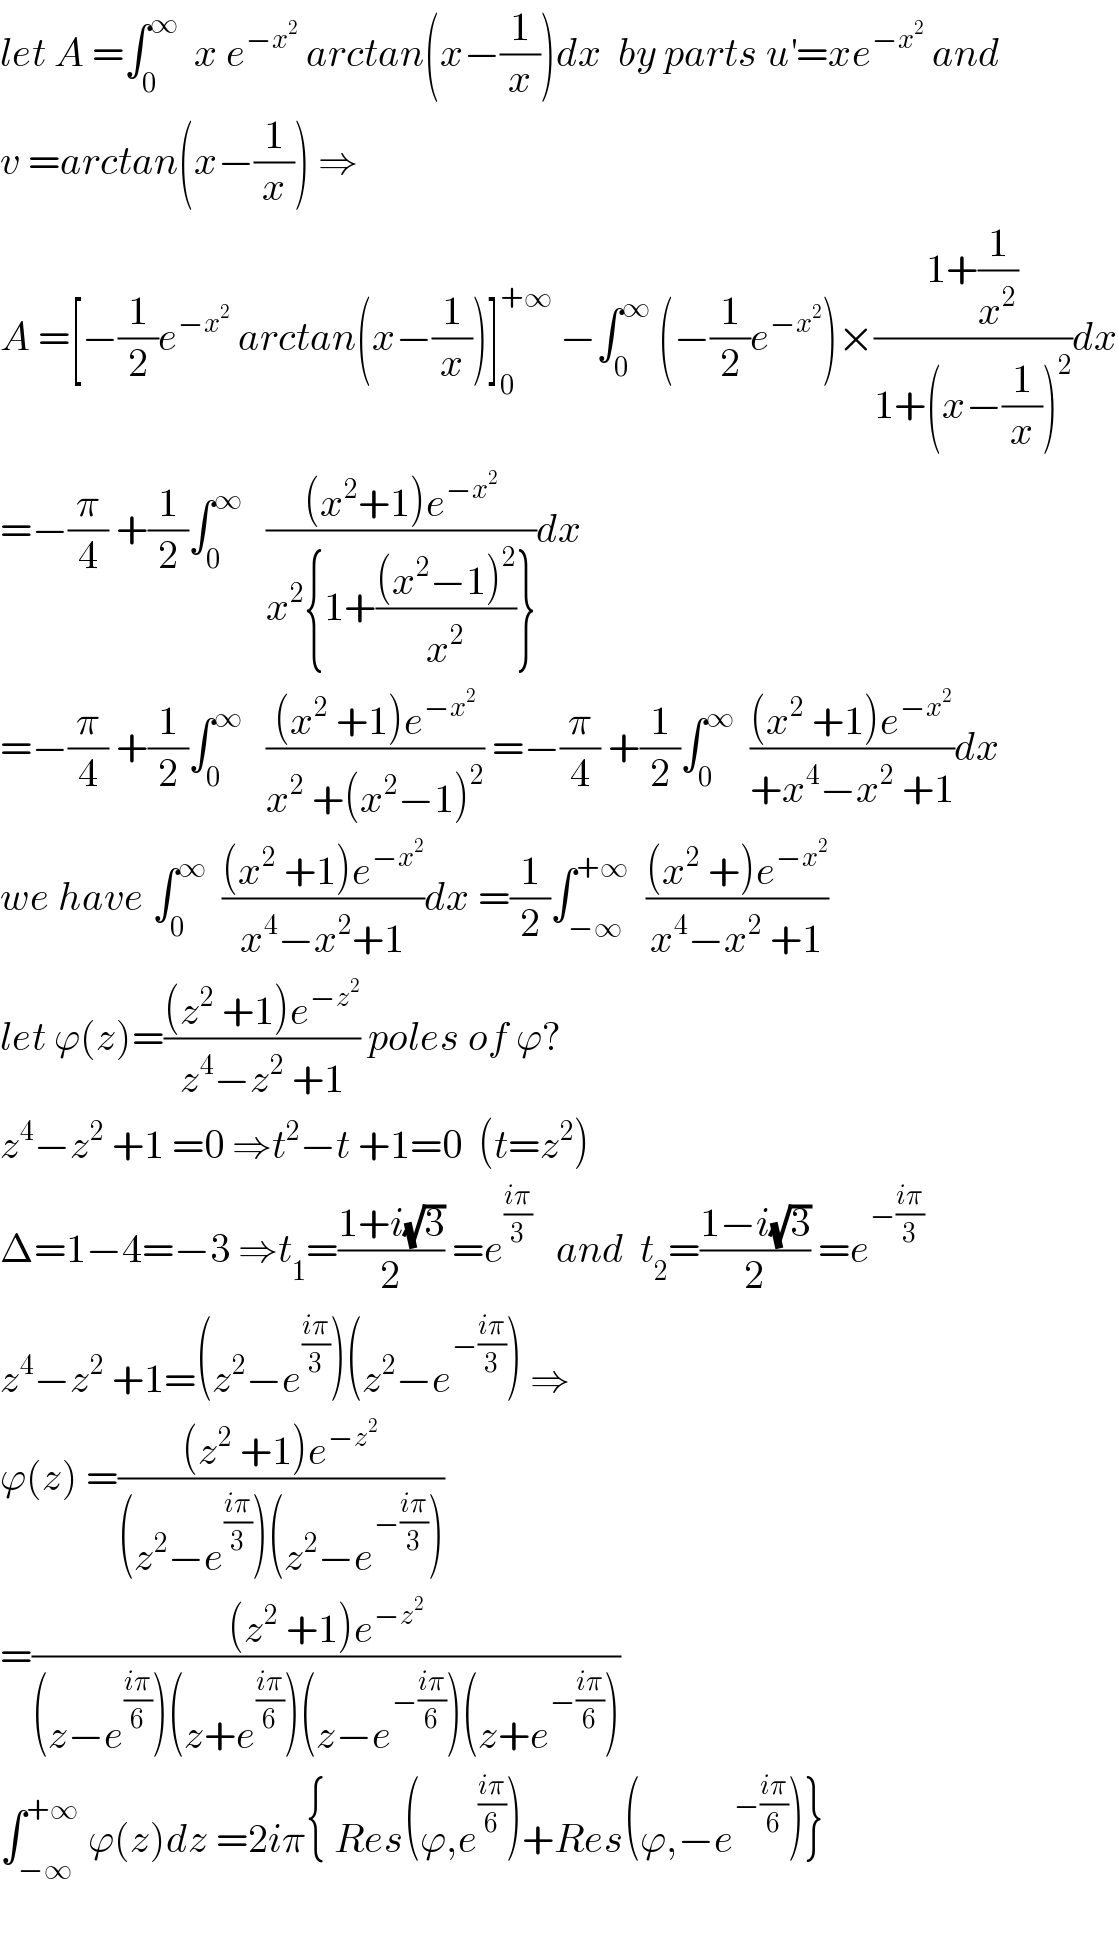 let A =∫_0 ^∞   x e^(−x^2 )  arctan(x−(1/x))dx  by parts u^′ =xe^(−x^2 )  and  v =arctan(x−(1/x)) ⇒  A =[−(1/2)e^(−x^2 )  arctan(x−(1/x))]_0 ^(+∞)  −∫_0 ^∞  (−(1/2)e^(−x^2 ) )×((1+(1/x^2 ))/(1+(x−(1/x))^2 ))dx  =−(π/4) +(1/2)∫_0 ^∞    (((x^2 +1)e^(−x^2 ) )/(x^2 {1+(((x^2 −1)^2 )/x^2 )}))dx  =−(π/4) +(1/2)∫_0 ^∞    (((x^2  +1)e^(−x^2 ) )/(x^2  +(x^2 −1)^2 )) =−(π/4) +(1/2)∫_0 ^∞   (((x^2  +1)e^(−x^2 ) )/(+x^4 −x^2  +1))dx  we have ∫_0 ^∞   (((x^2  +1)e^(−x^2 ) )/(x^4 −x^2 +1))dx =(1/2)∫_(−∞) ^(+∞)   (((x^2  +)e^(−x^2 ) )/(x^4 −x^2  +1))  let ϕ(z)=(((z^2  +1)e^(−z^2 ) )/(z^4 −z^2  +1)) poles of ϕ?  z^4 −z^2  +1 =0 ⇒t^2 −t +1=0  (t=z^2 )  Δ=1−4=−3 ⇒t_1 =((1+i(√3))/2) =e^((iπ)/3)    and  t_2 =((1−i(√3))/2) =e^(−((iπ)/3))   z^4 −z^2  +1=(z^2 −e^((iπ)/3) )(z^2 −e^(−((iπ)/3)) ) ⇒  ϕ(z) =(((z^2  +1)e^(−z^2 ) )/((z^2 −e^((iπ)/3) )(z^2 −e^(−((iπ)/3)) )))  =(((z^2  +1)e^(−z^2 ) )/((z−e^((iπ)/6) )(z+e^((iπ)/6) )(z−e^(−((iπ)/6)) )(z+e^(−((iπ)/6)) )))  ∫_(−∞) ^(+∞)  ϕ(z)dz =2iπ{ Res(ϕ,e^((iπ)/6) )+Res(ϕ,−e^(−((iπ)/6)) )}    